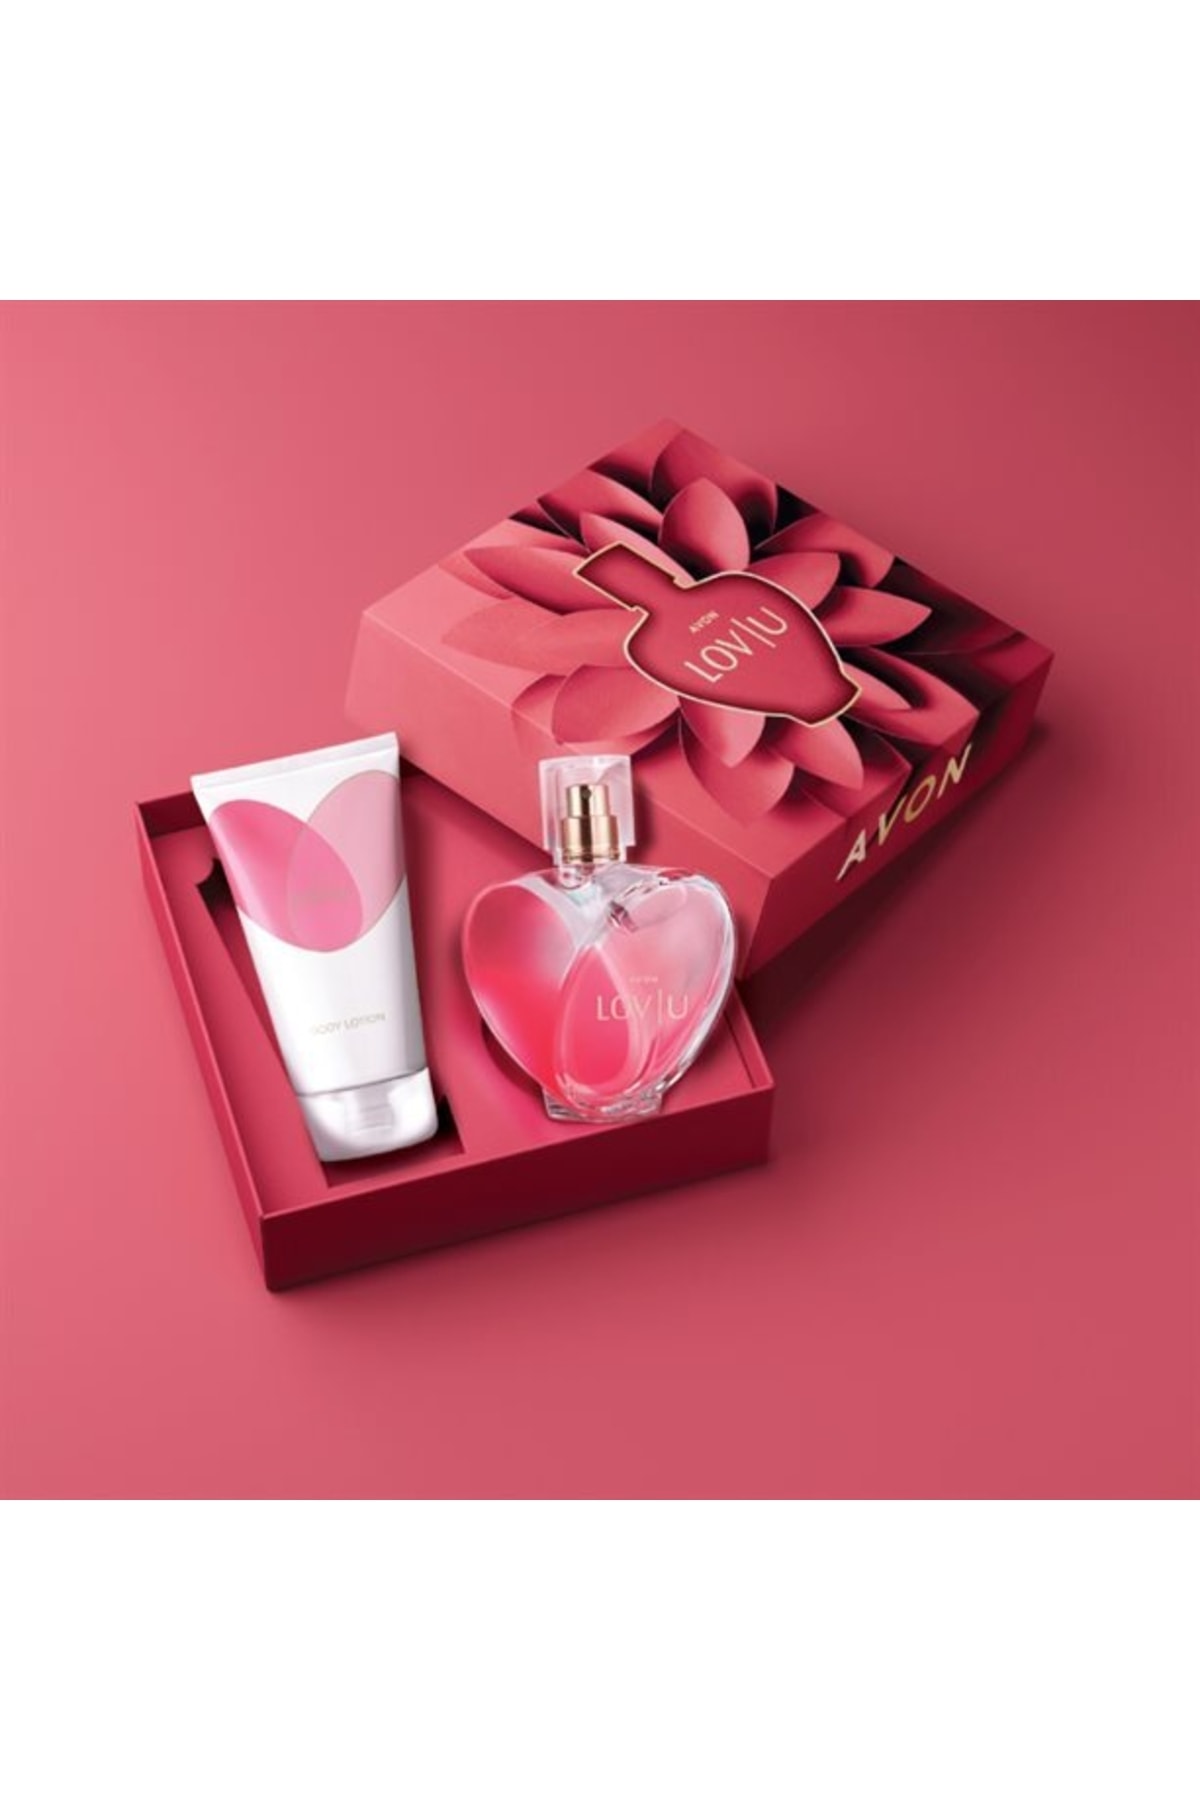 AVON Lov U 50 Ml Kadın Parfüm Hediye Seti Sevgililer Gününe Özel